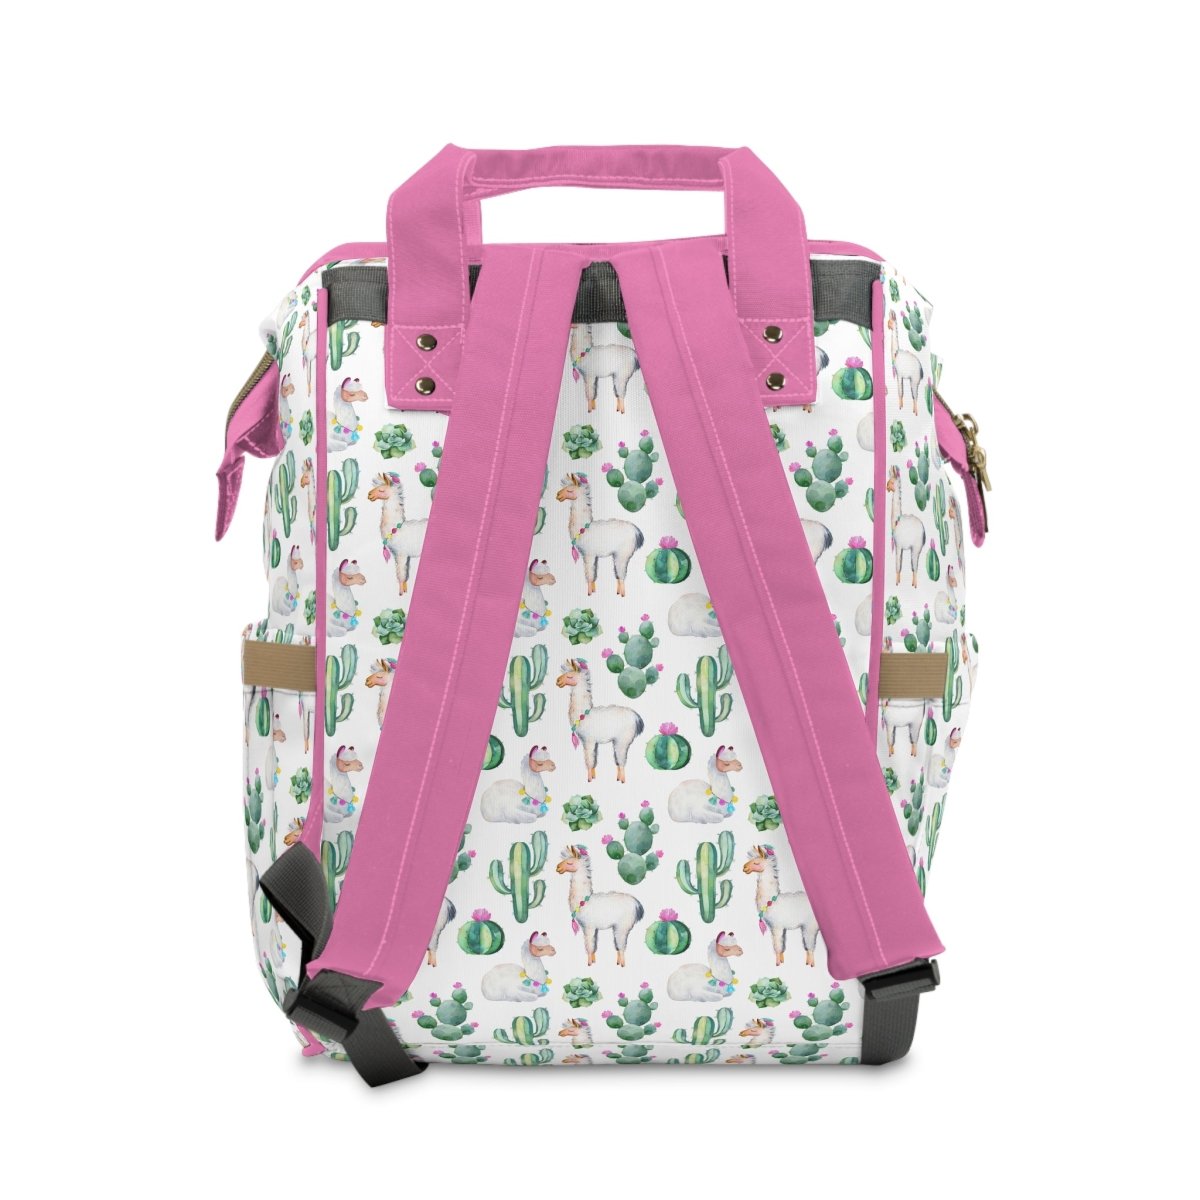 Llama Love Personalized Backpack Diaper Bag - gender_girl, Llama Love, text